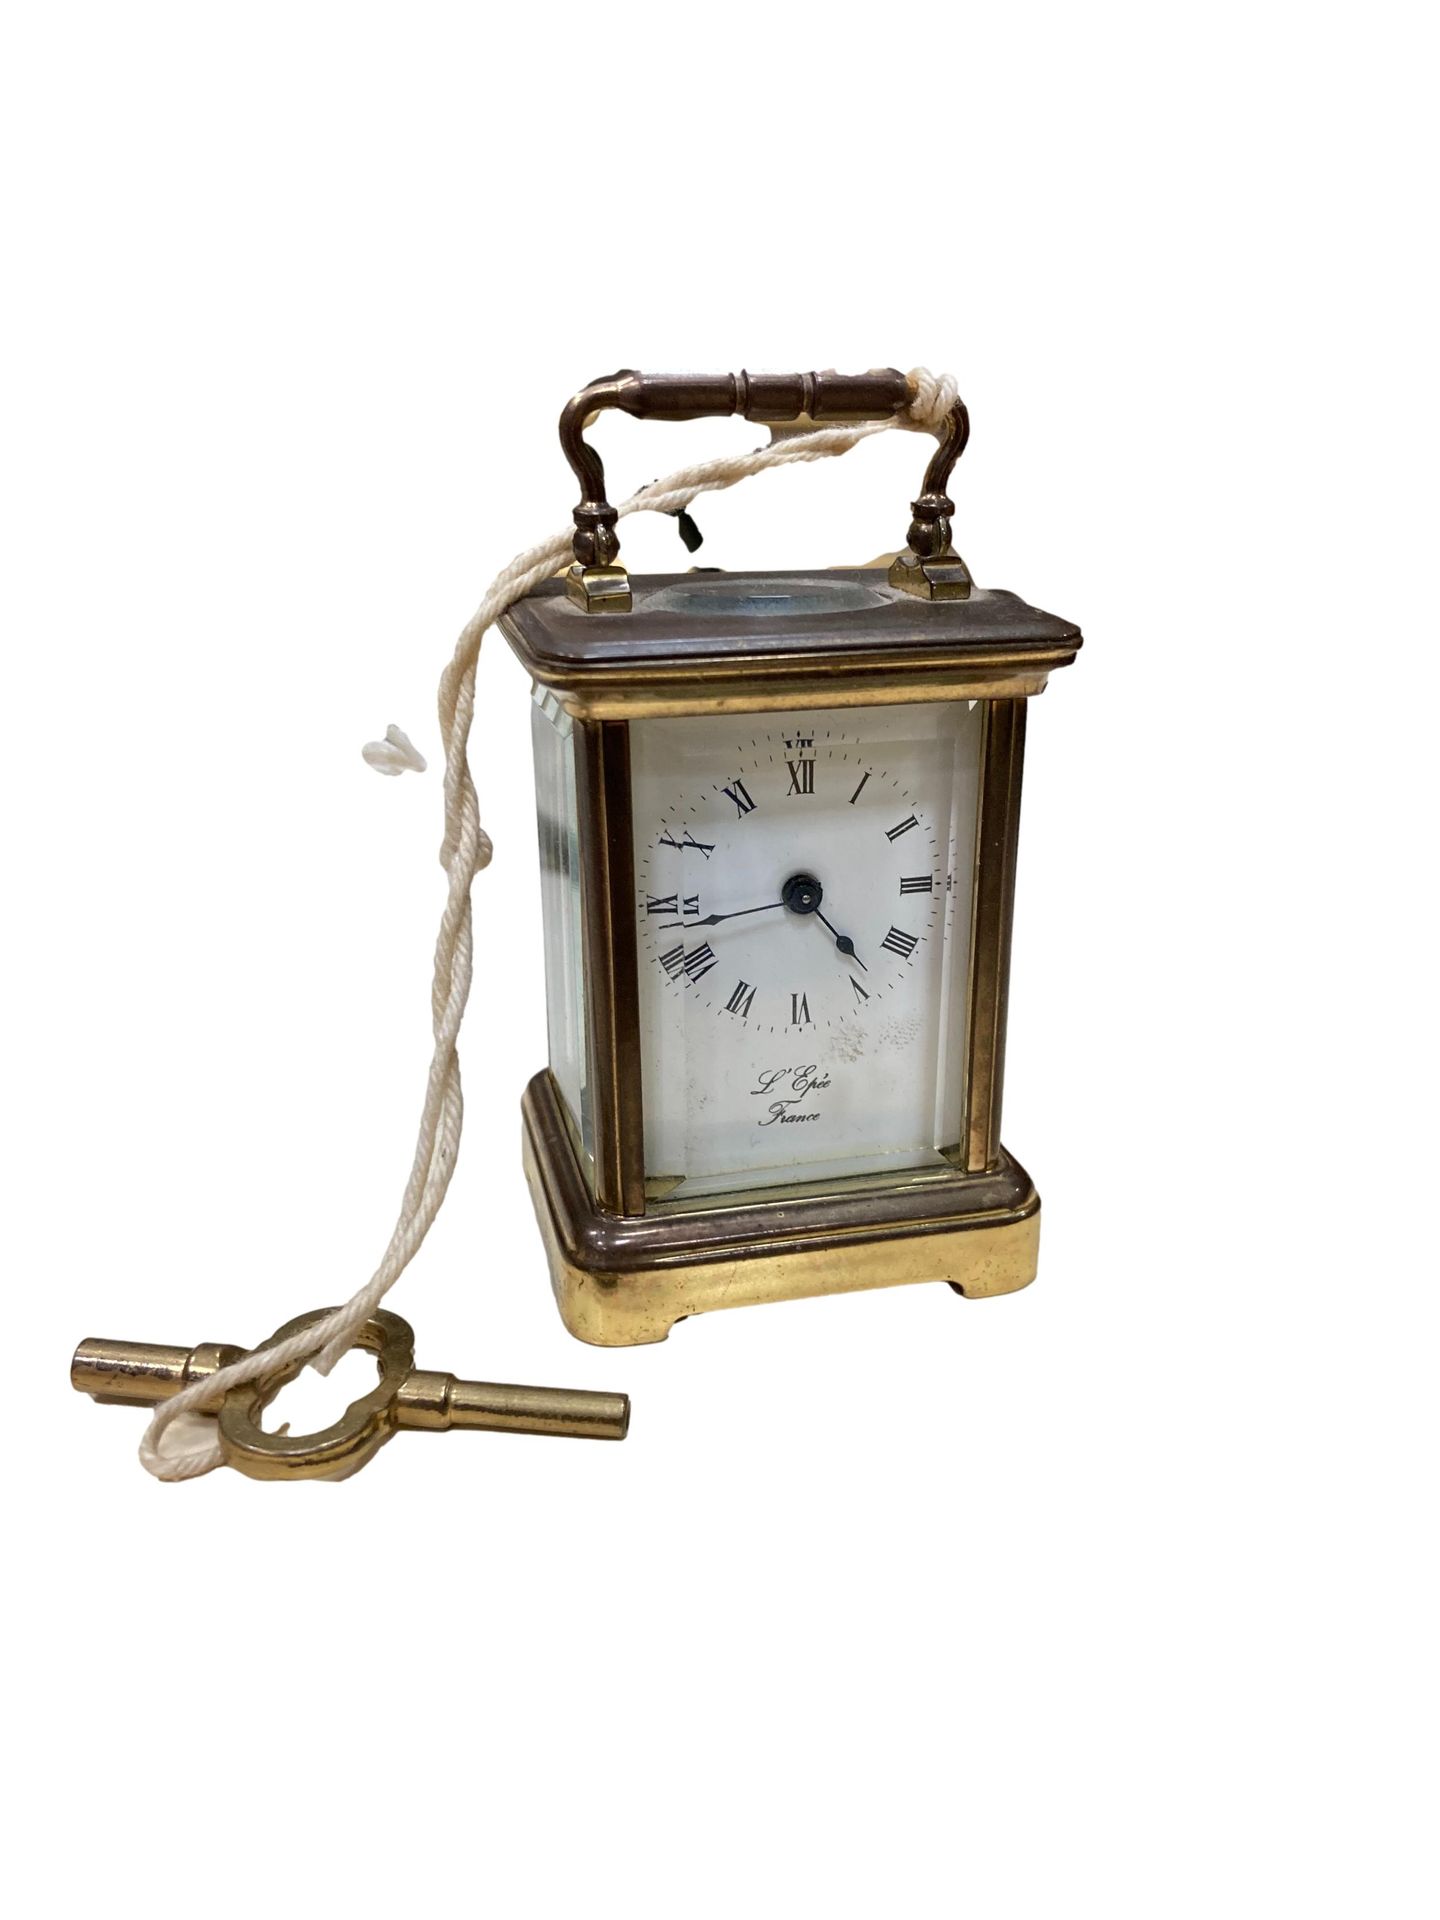 Null 剑

鎏金铜质军官钟

柜子：长方形，有5个玻璃面

表盘：白色，罗马数字时标，签名

H.6宽4深3.8厘米